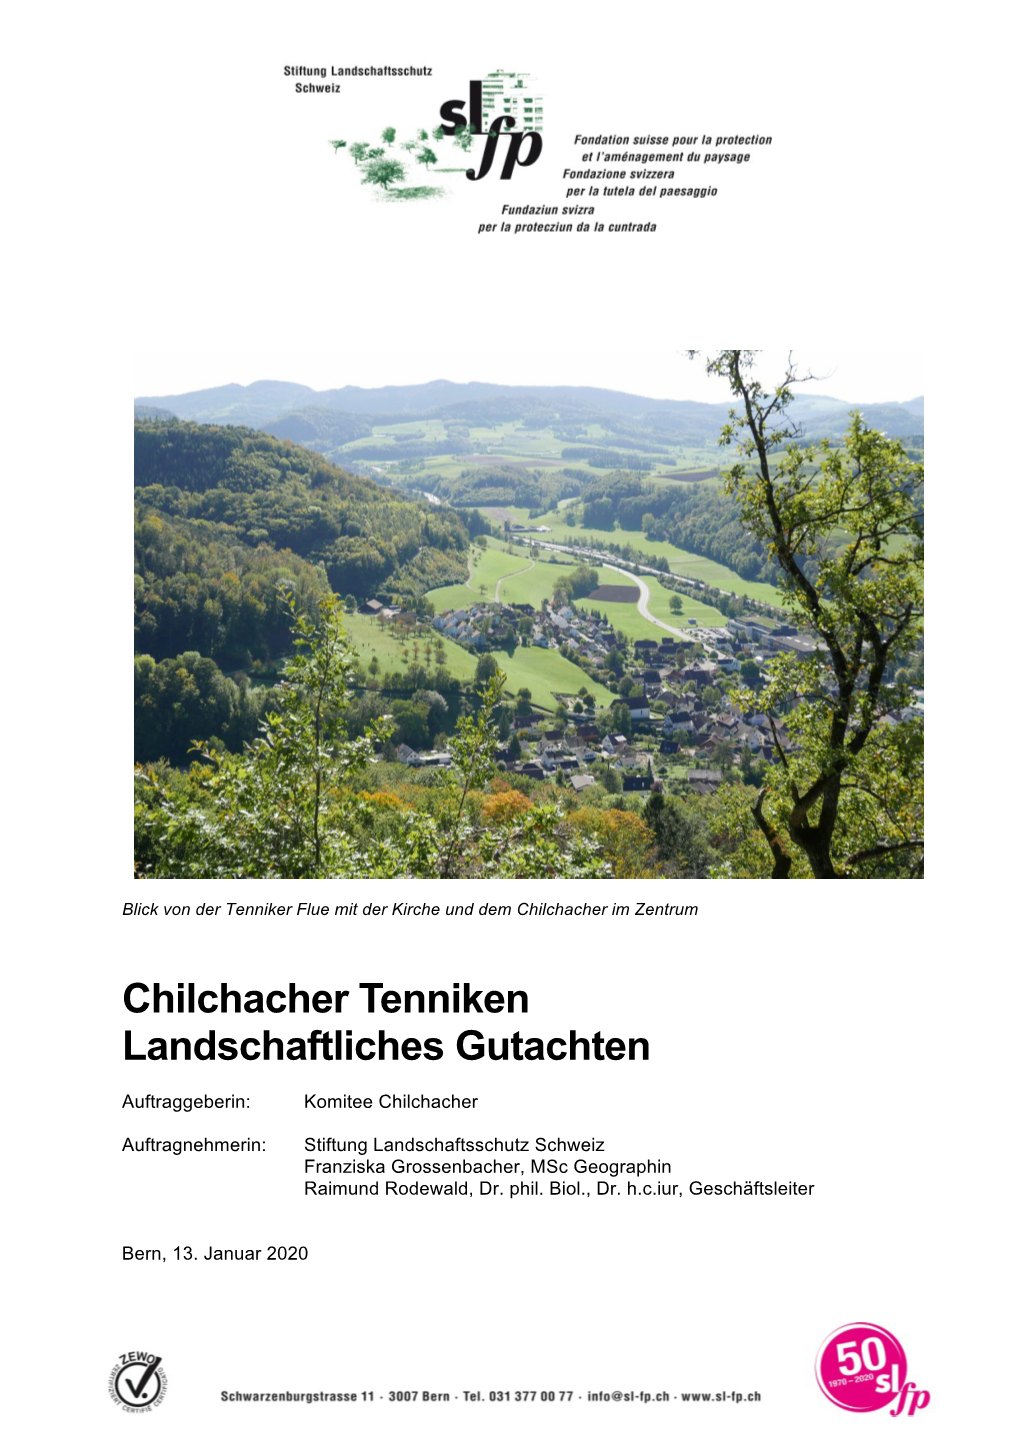 Chilchacher Tenniken Landschaftliches Gutachten